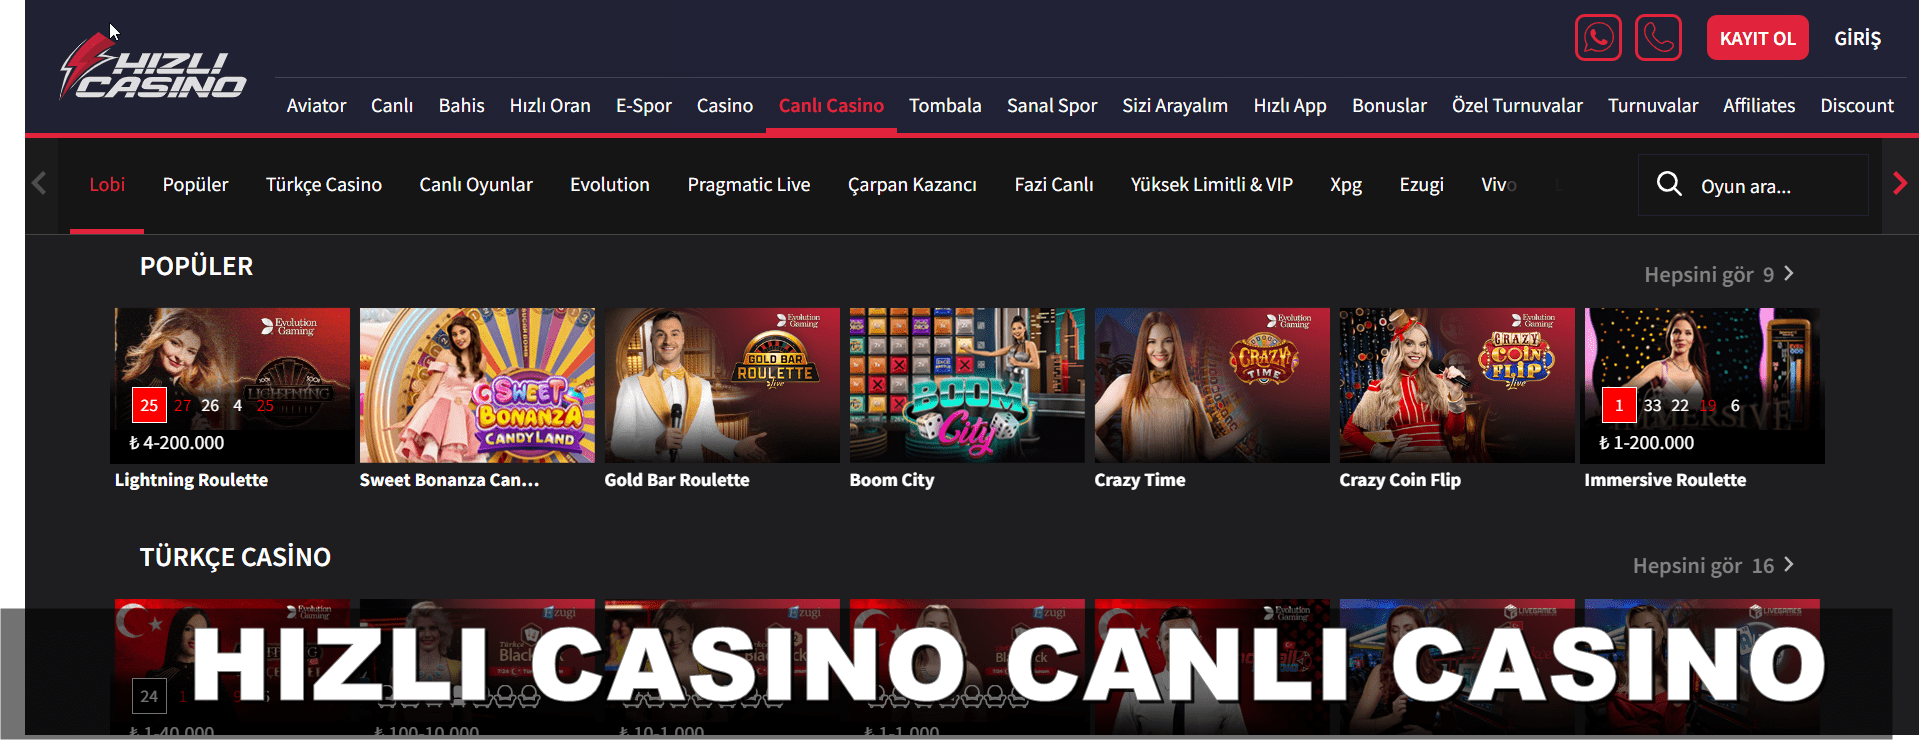 hizlicasino canli casino